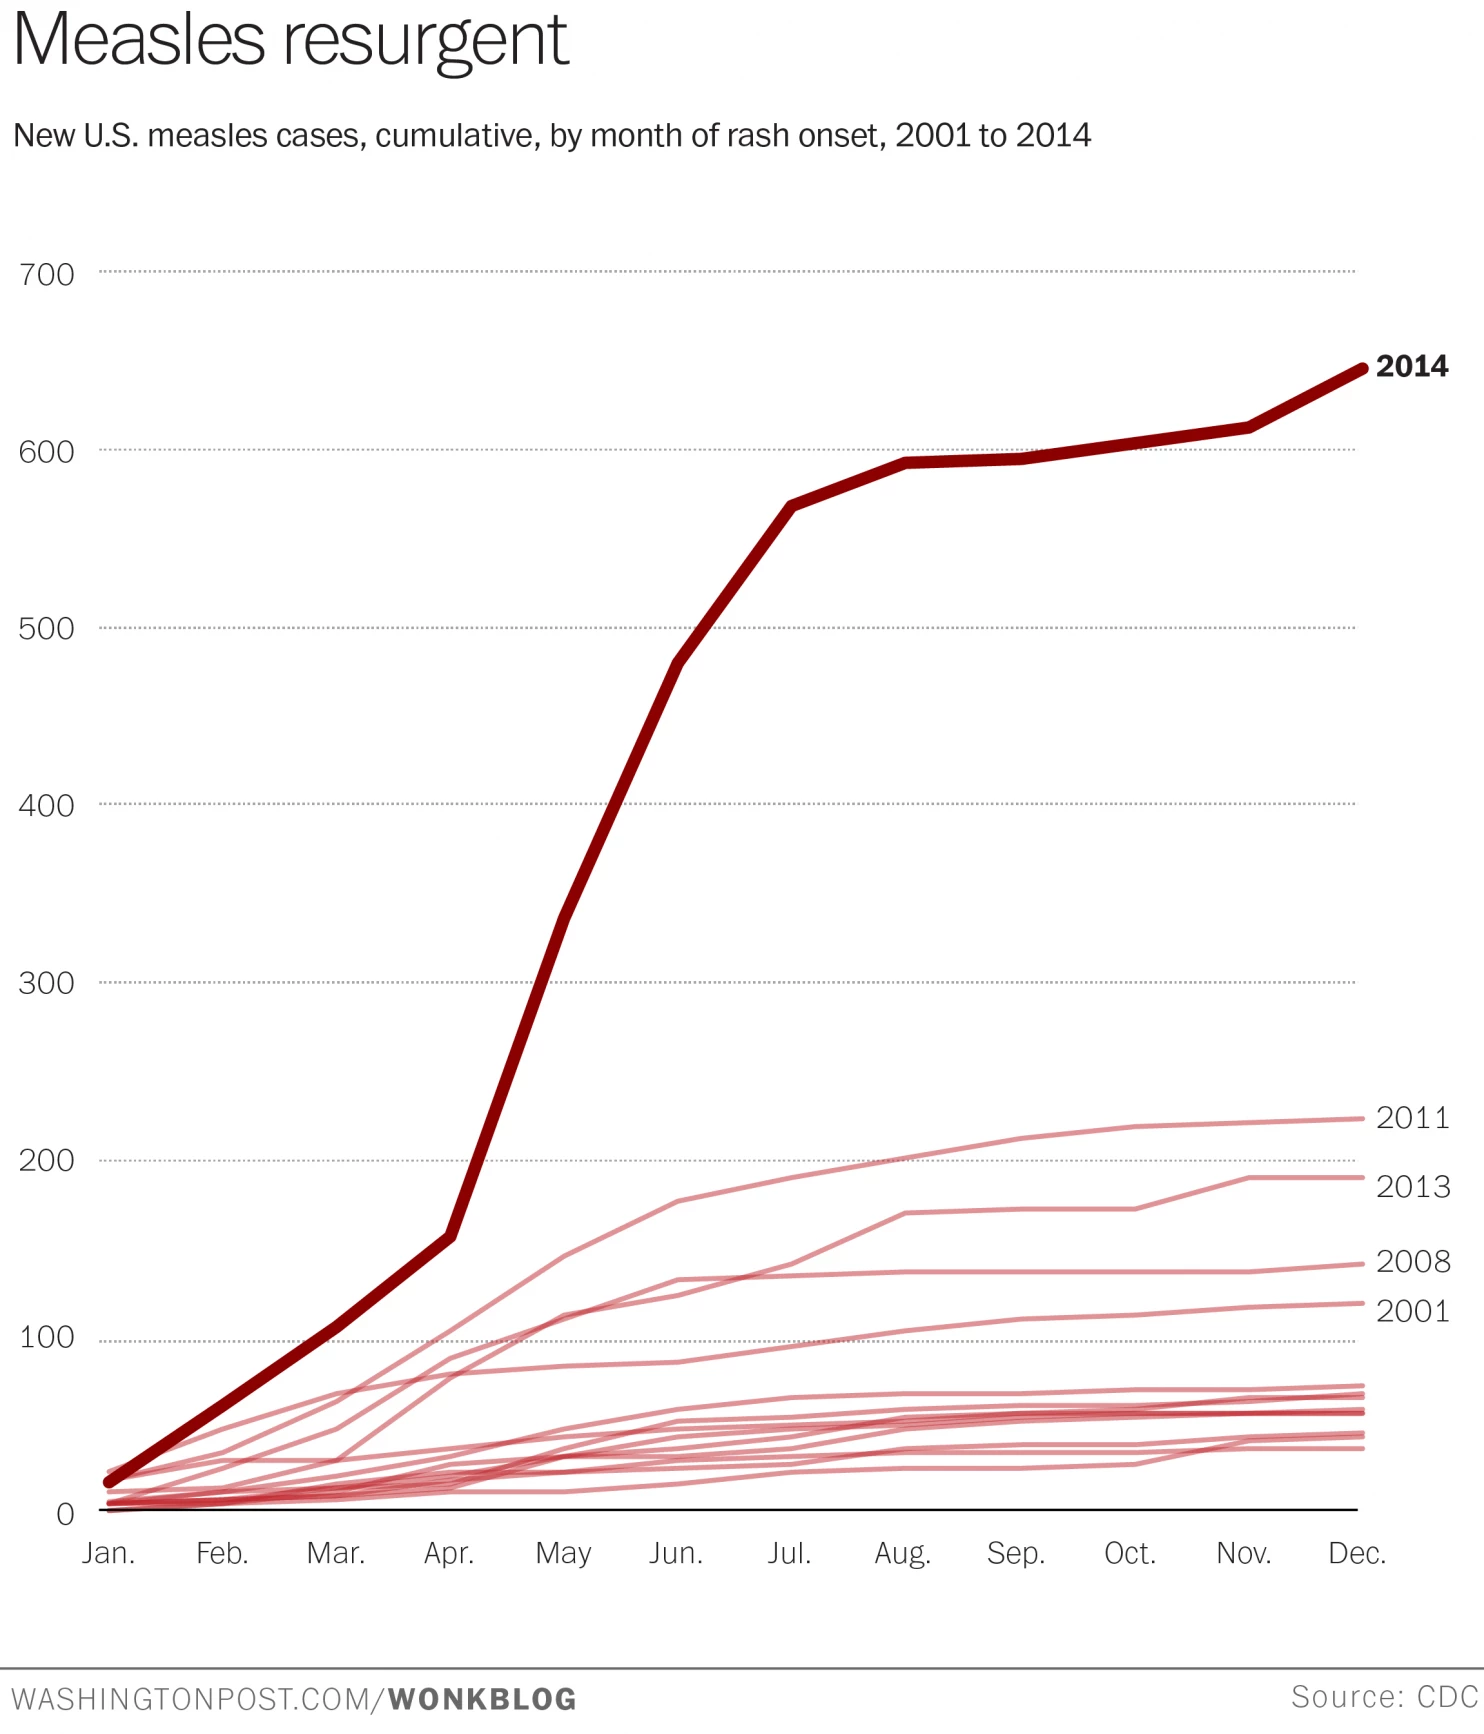 Retour d'une maladie suite à la propagande anti-vaccination : nouveaux cas de rougeoles aux USA,
      cumulés, par mois, de 2001/2014